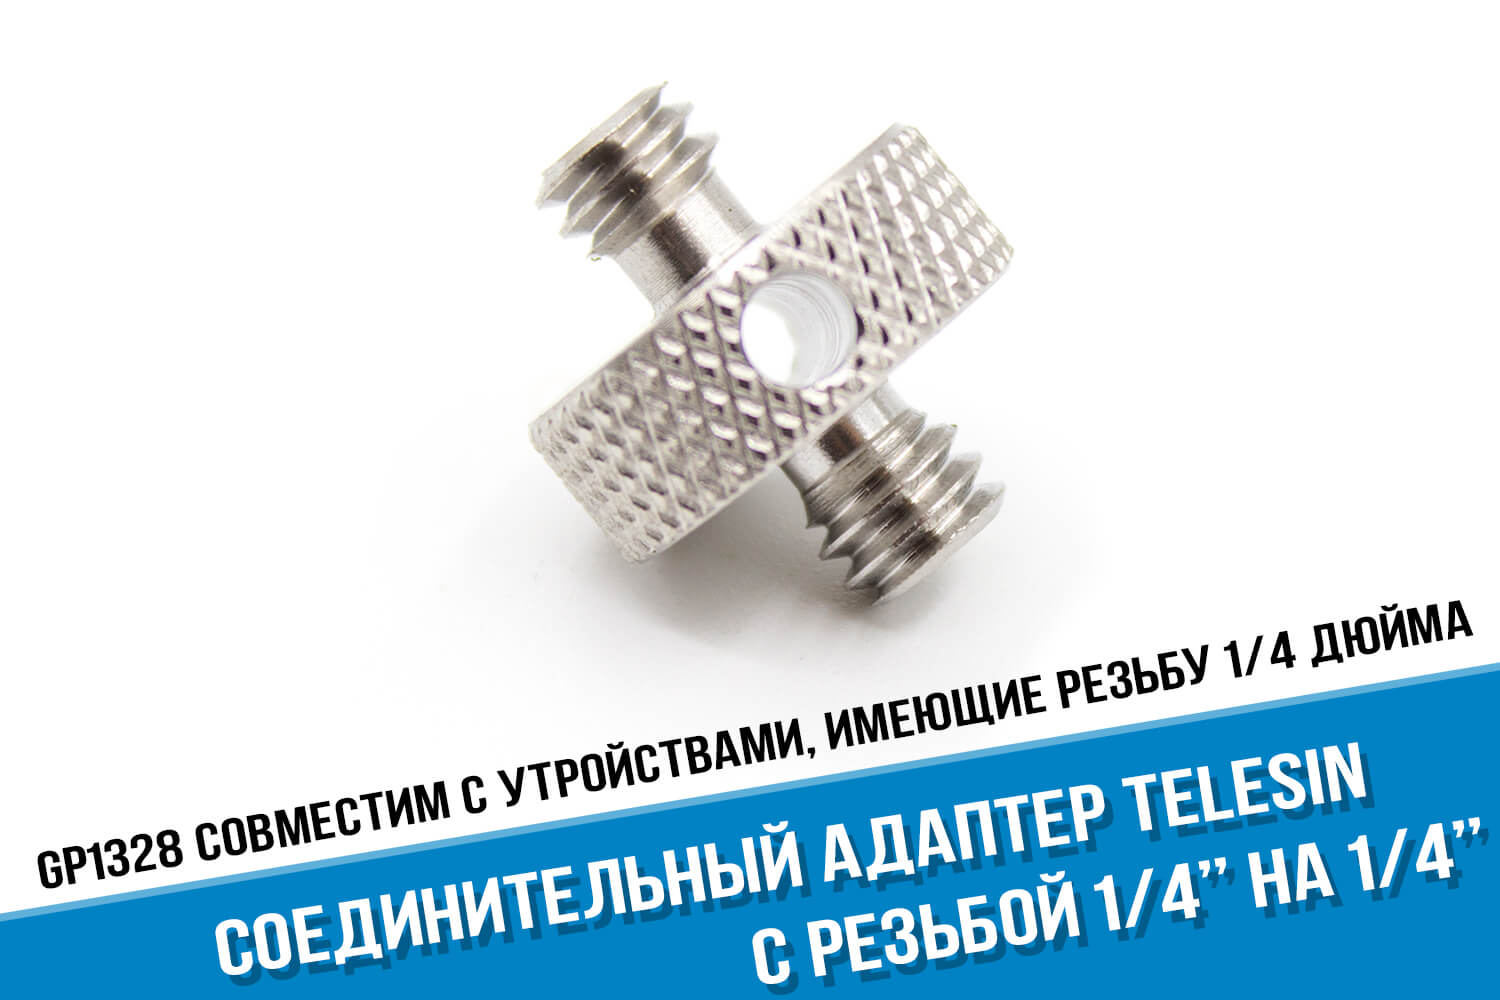 Соединительный адаптер с резьбой 1/4 на 1/4 дюйма фирмы Telesin